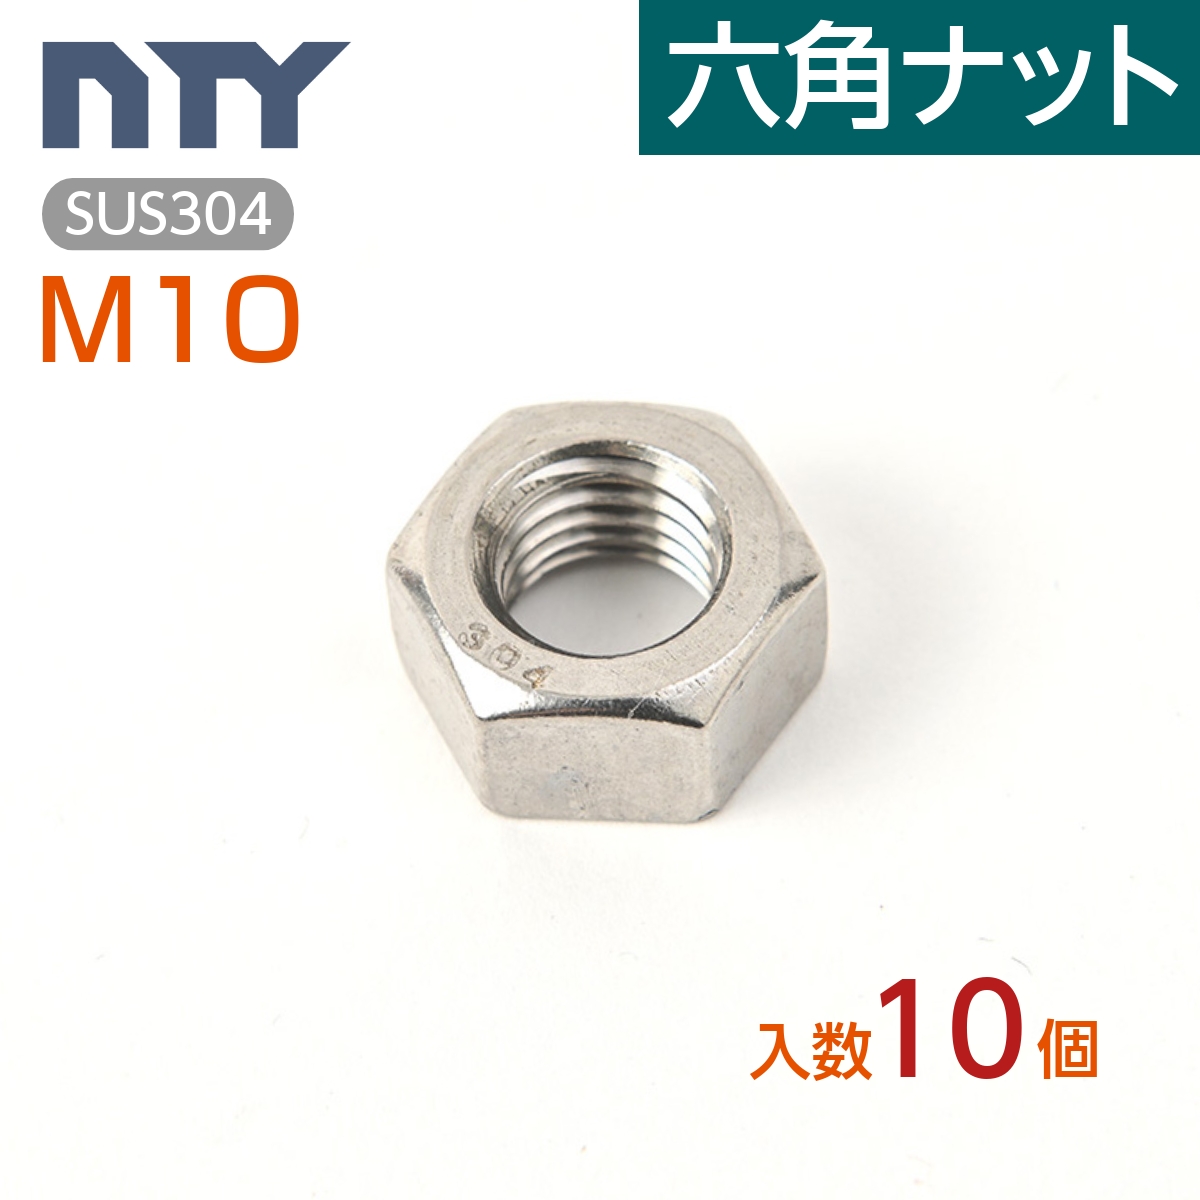 ネジナラ 六角ナット(切削) 真鍮 M3 (20個入) - ネジ・釘・金属素材